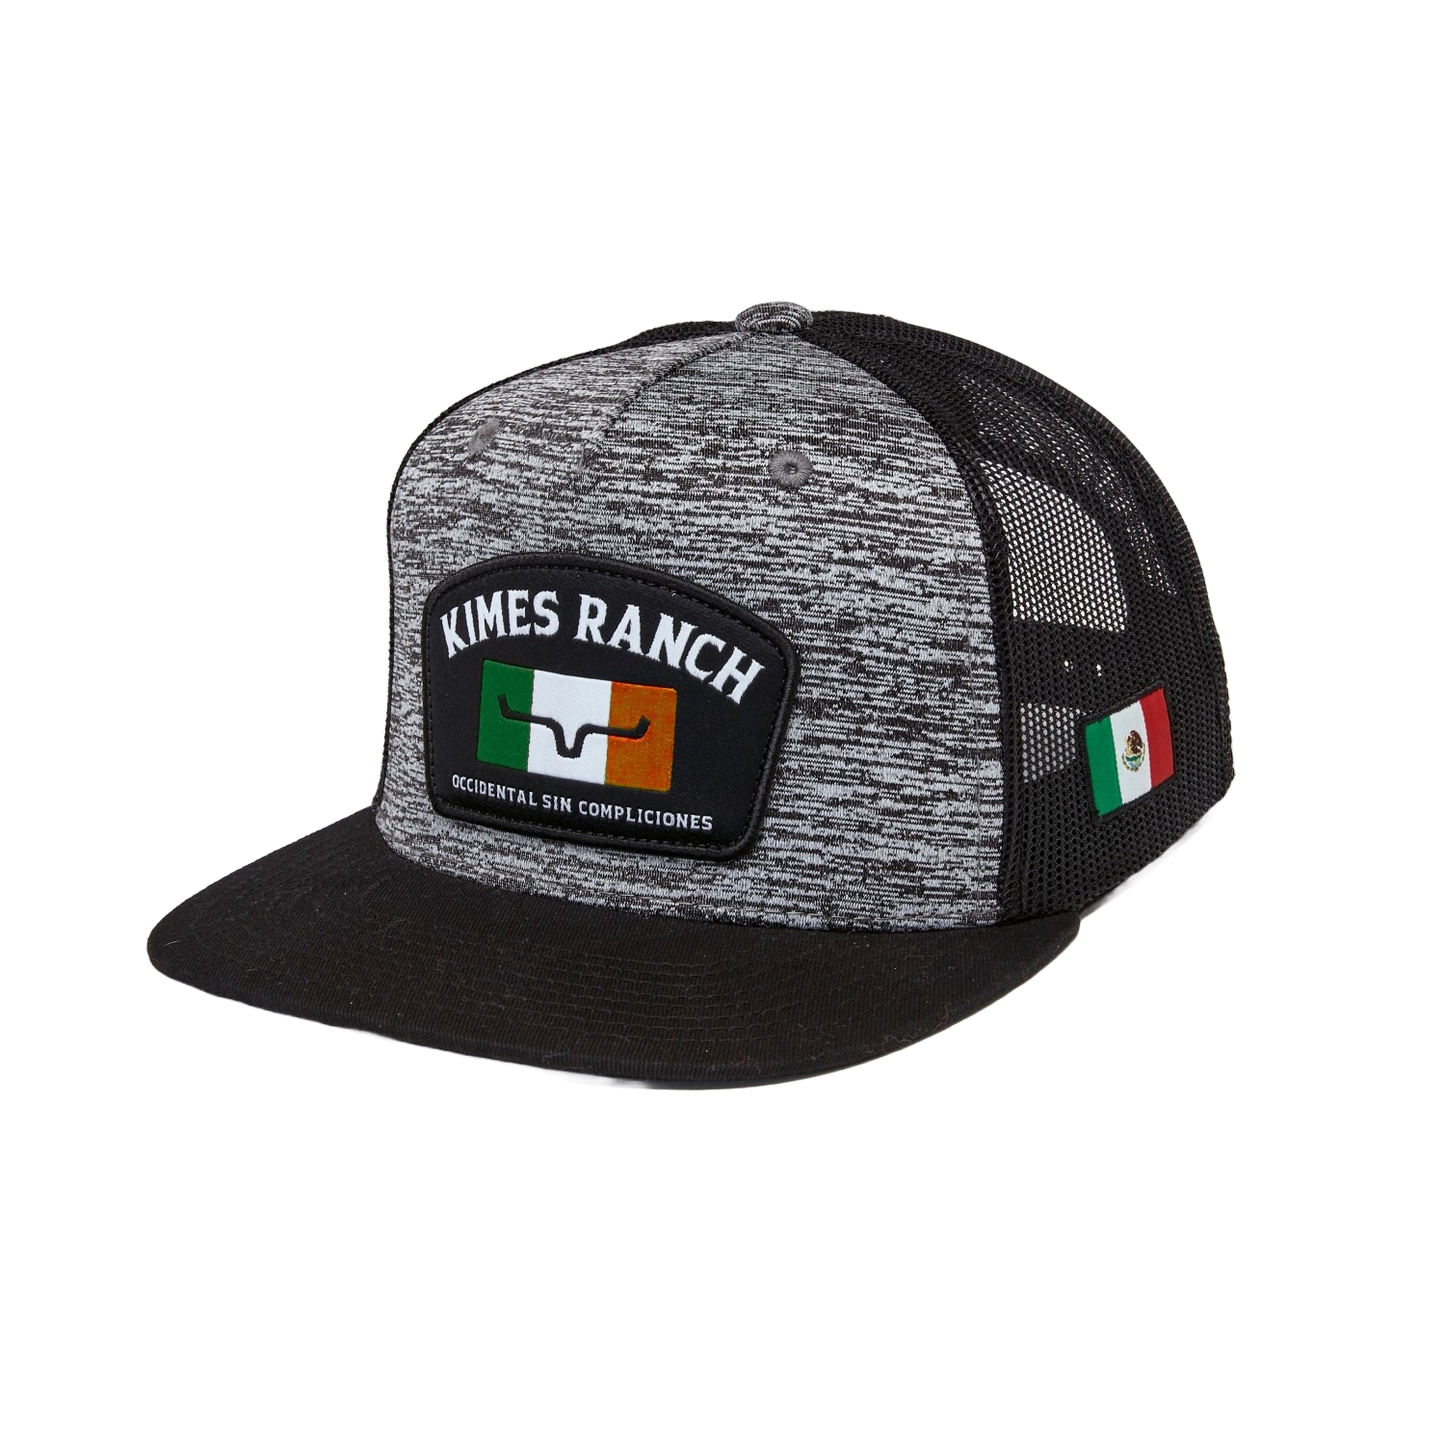 Kimes Ranch Bandera Mexican Flag Heather Grey Hat UHA0000025-HG